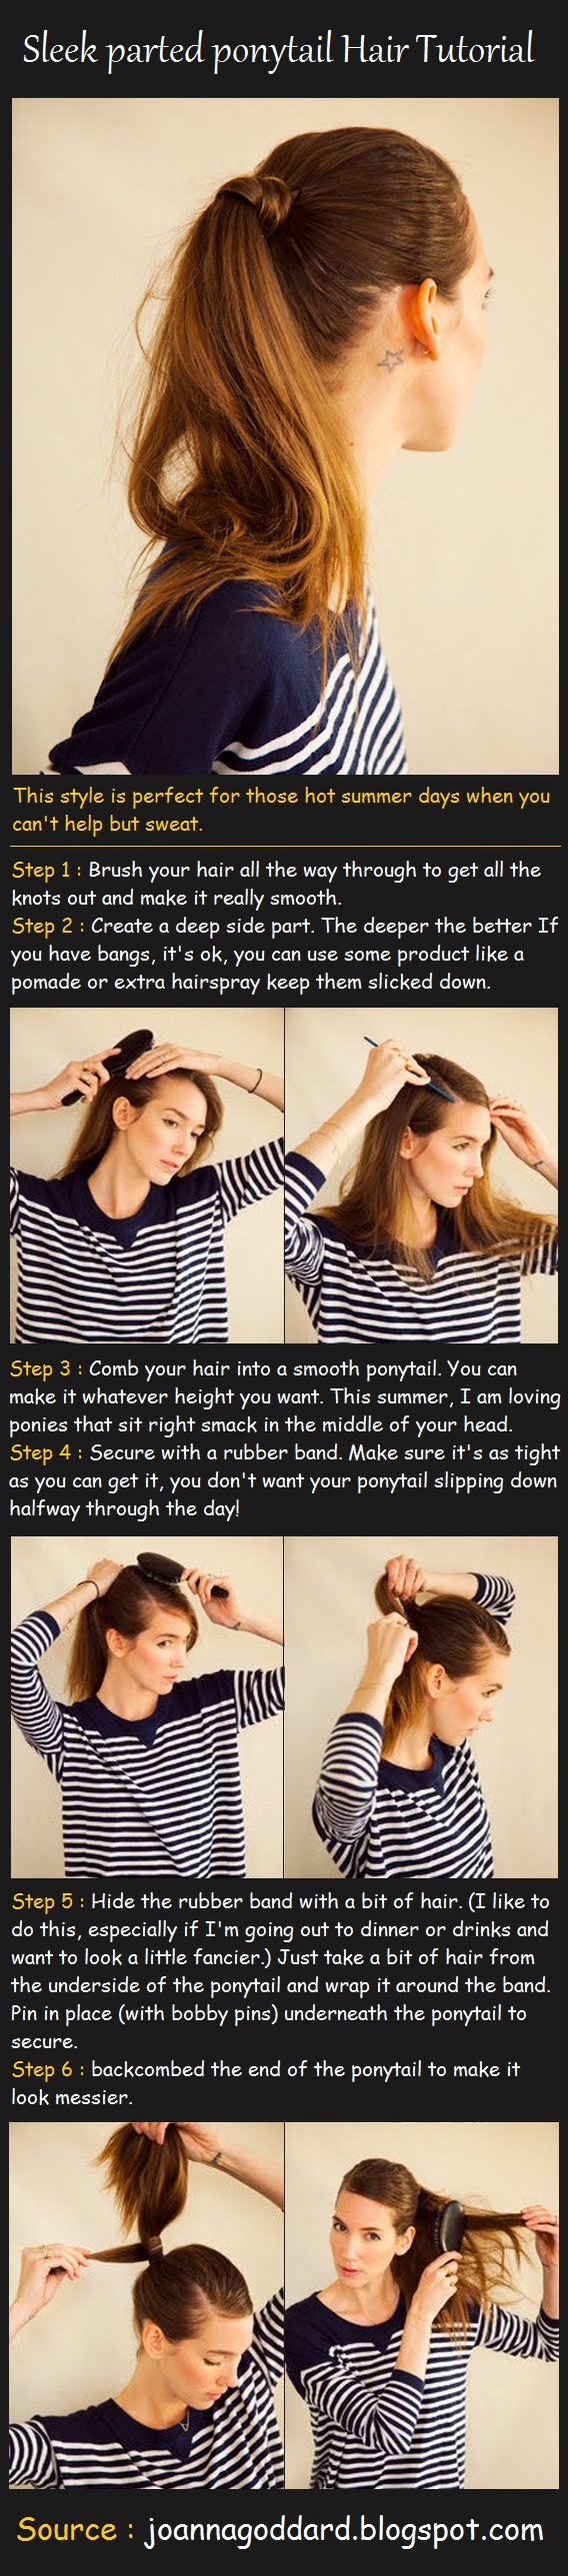 sleek-parted-ponytail-hair-tutorial